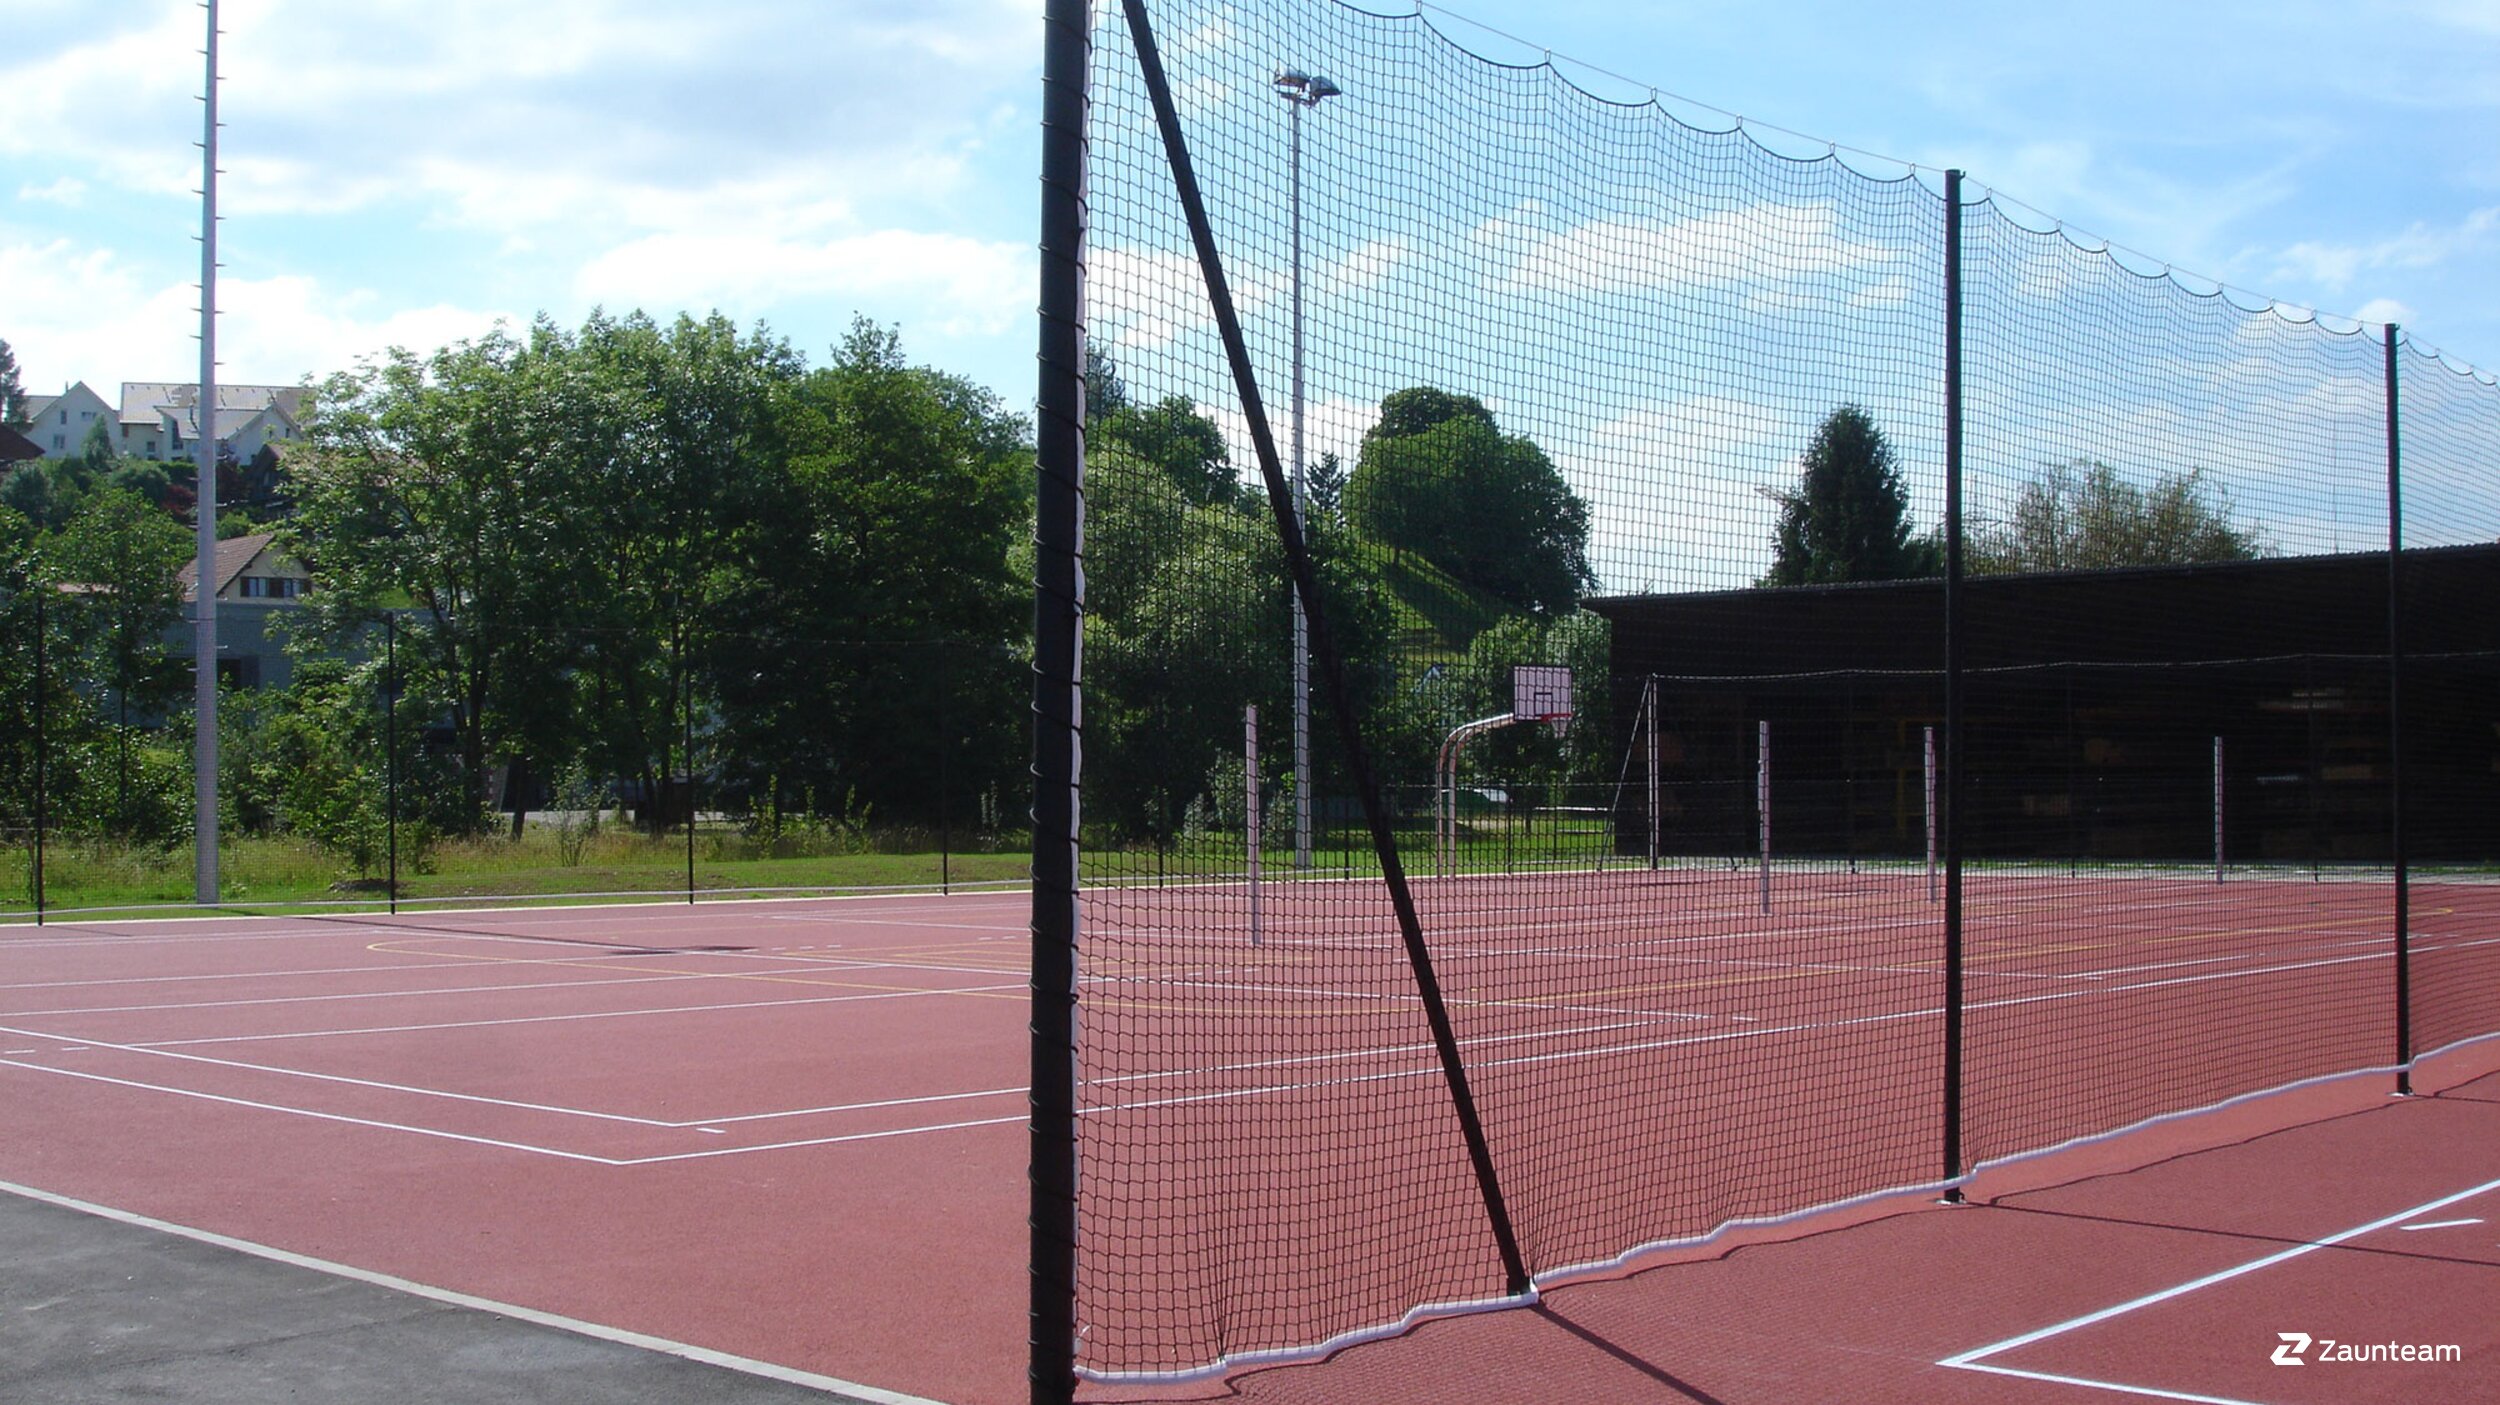 Ballfangzäune und Ballfangnetze werden als Sport- und Schutznetze nicht nur auf Fussballplätzen, sondern spezifisch auch für Beachvolleyball, Badminton, Tennis, Hockey, Diskus- und Hammerwurf eingesetzt. | © Zaunteam